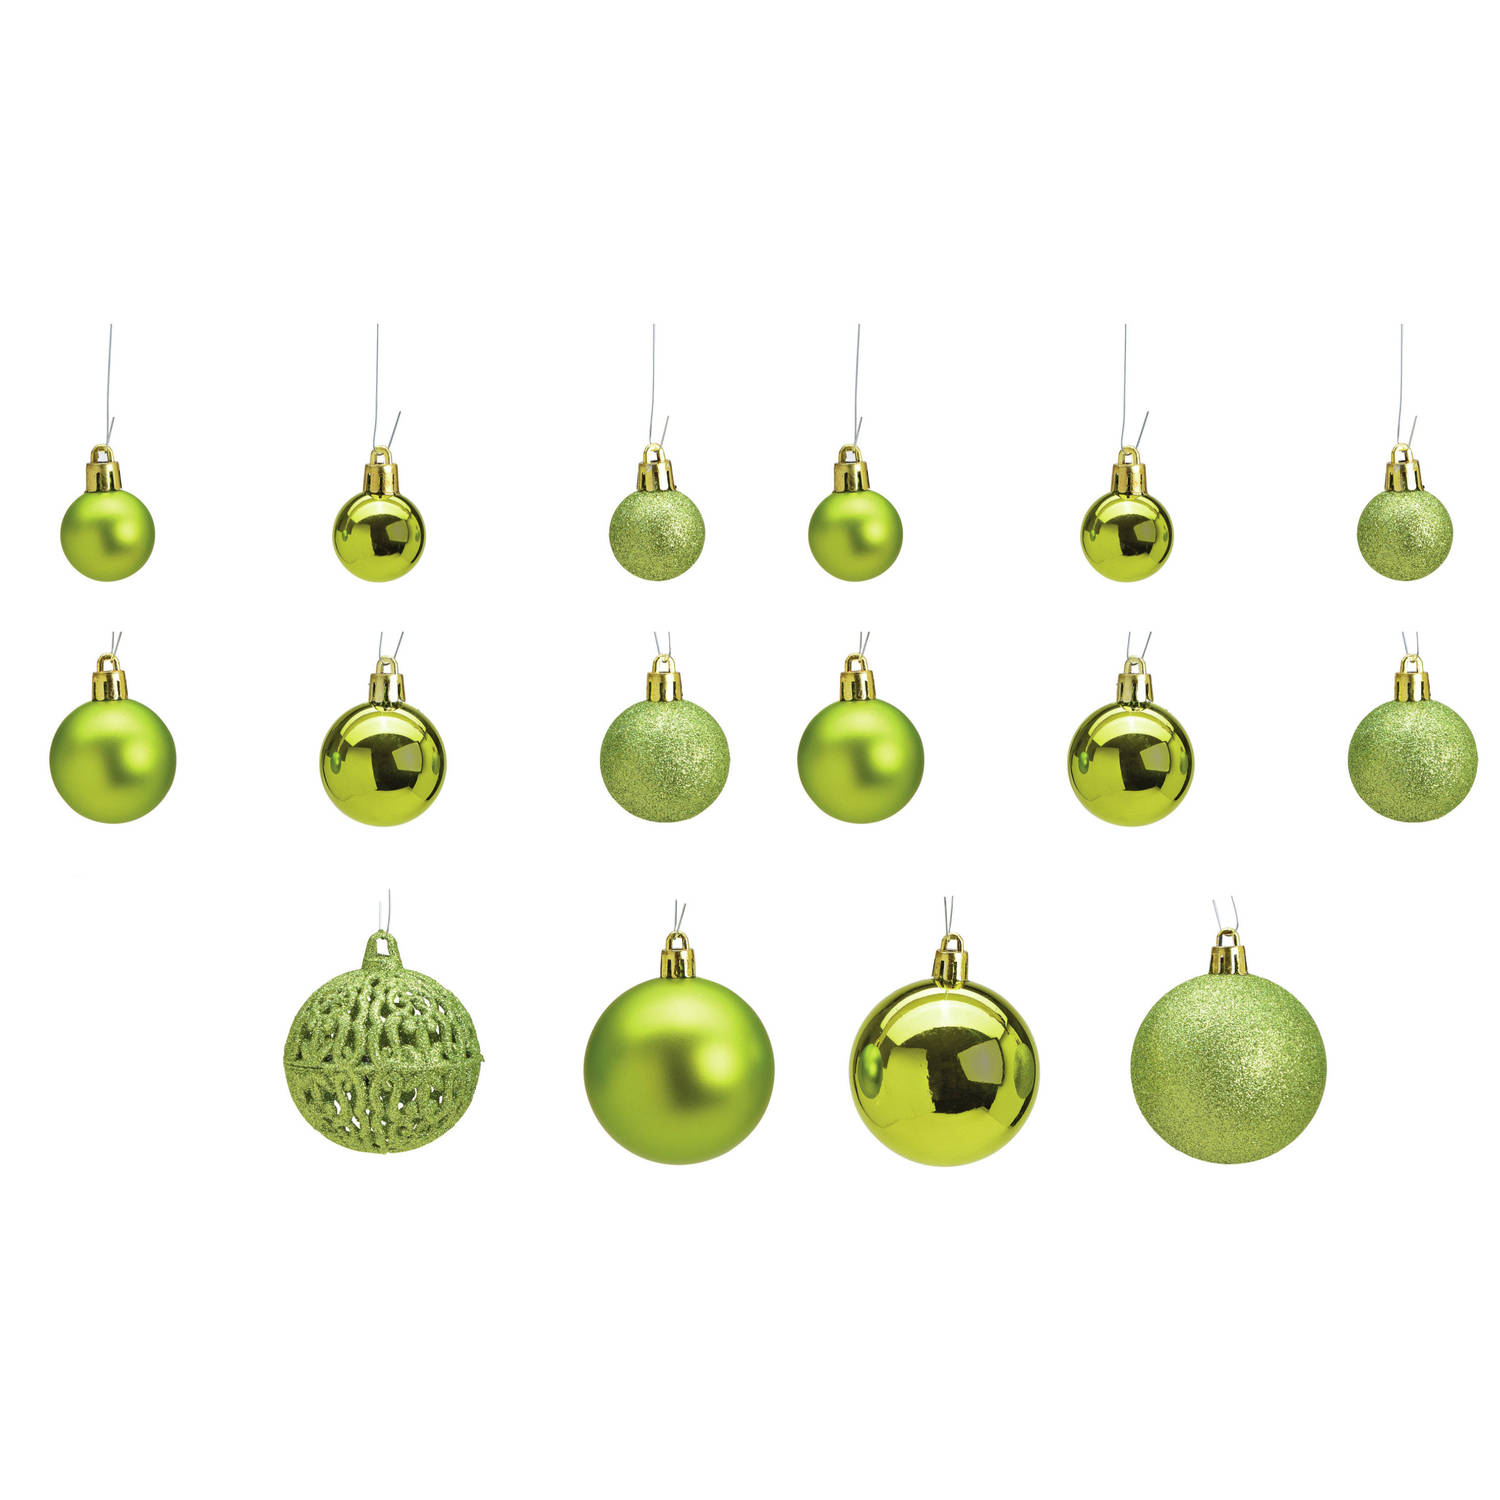 geloof huilen wijsheid 50x stuks kunststof kerstballen lime groen 3, 4 en 6 cm - Kerstbal | Blokker